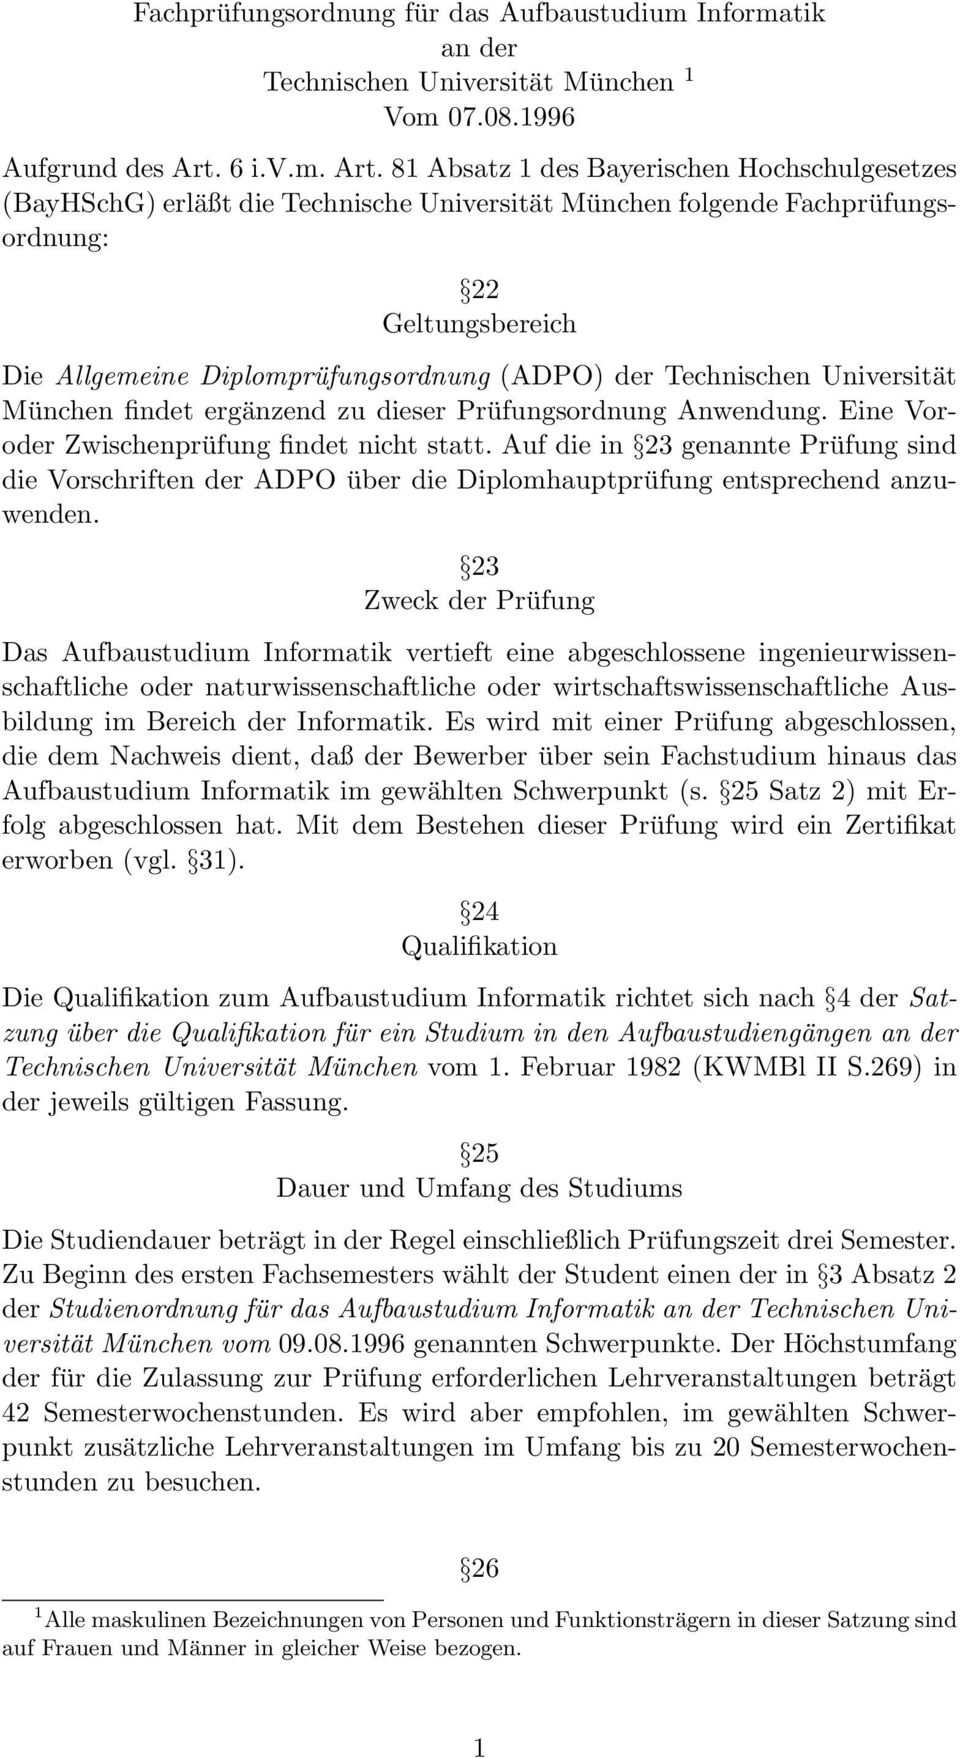 81 Absatz 1 des Bayerischen Hochschulgesetzes (BayHSchG) erläßt die Technische Universität München folgende Fachprüfungsordnung: 22 Geltungsbereich Die Allgemeine Diplomprüfungsordnung (ADPO) der